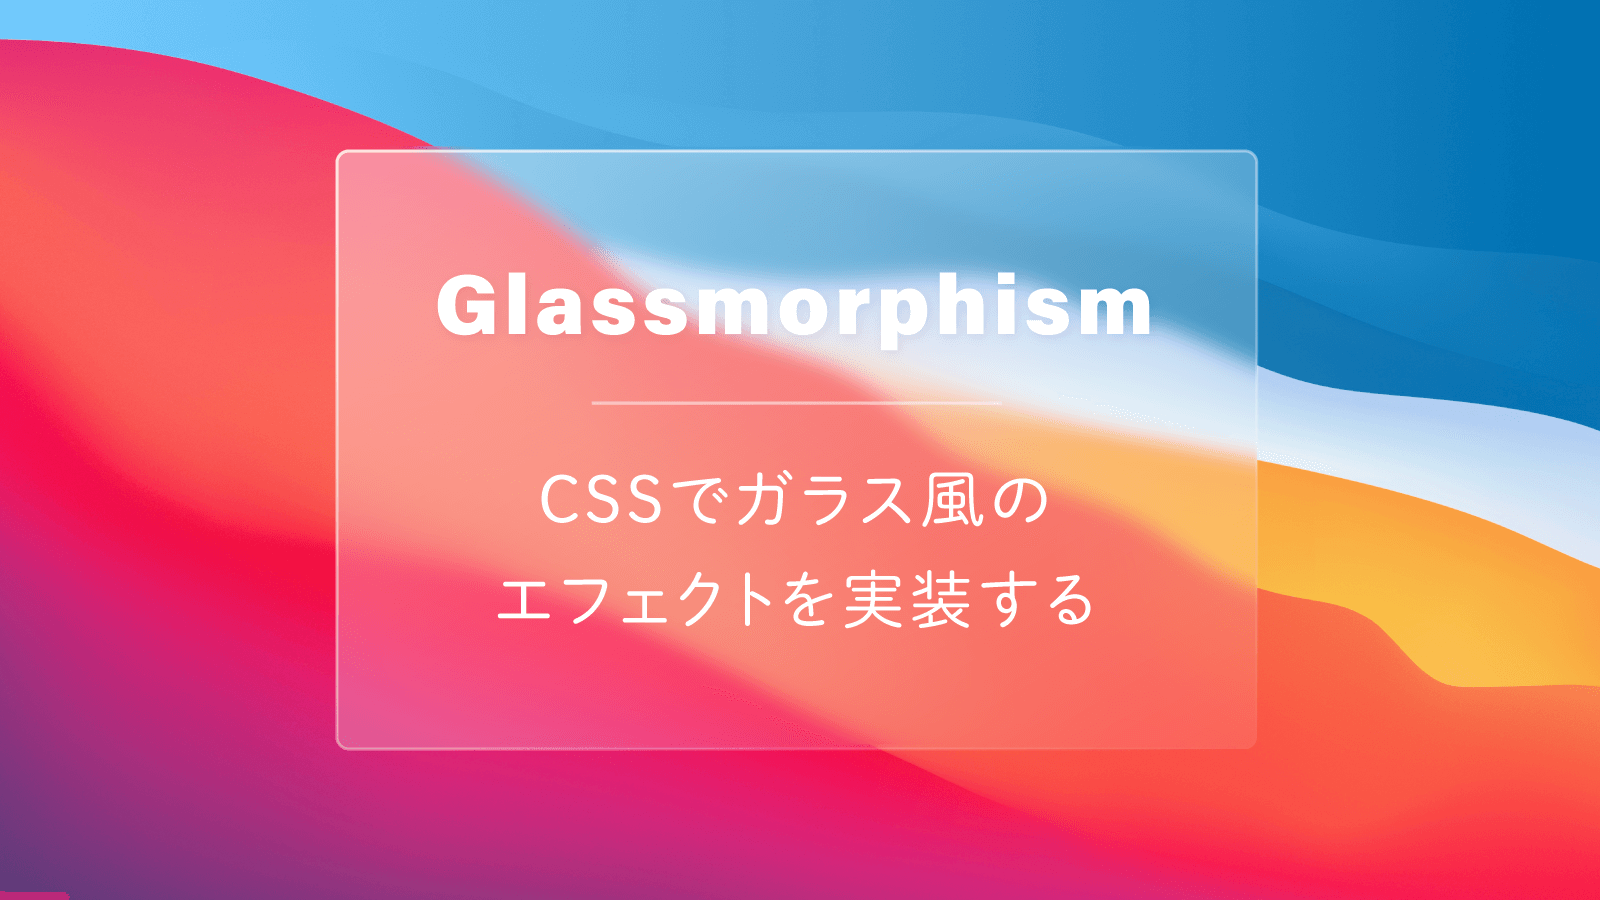 我如何制作像Streamlabs这样的透明背景CSS 码农俱乐部- Golang中国 - css3 透 明 背景 - Stella0on2